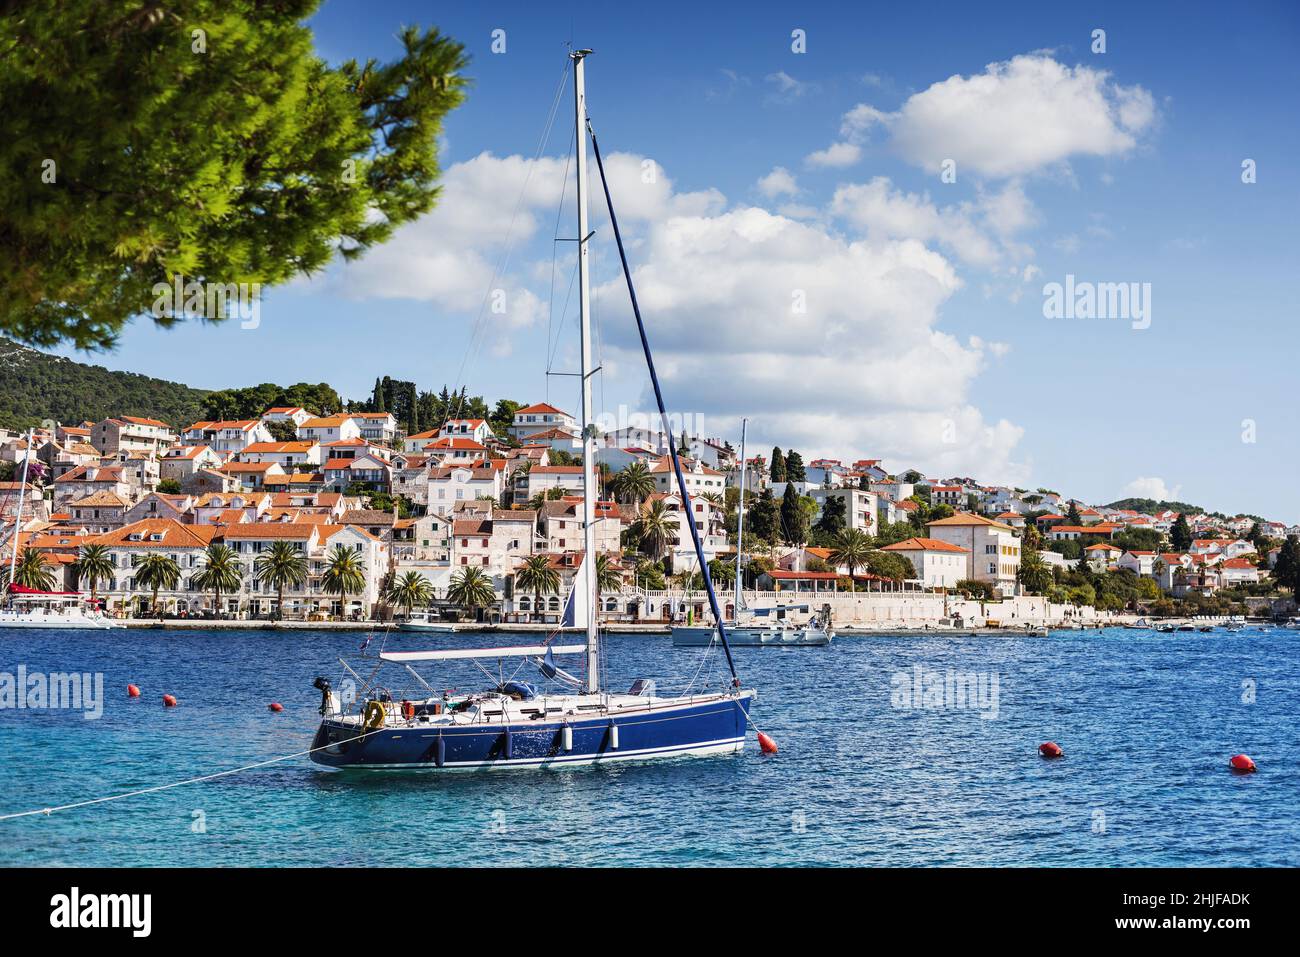 Insel Hvar, Dalmatien, Kroatien. Berühmtes Wahrzeichen und touristisches Ziel für Reisen in Europa Stockfoto